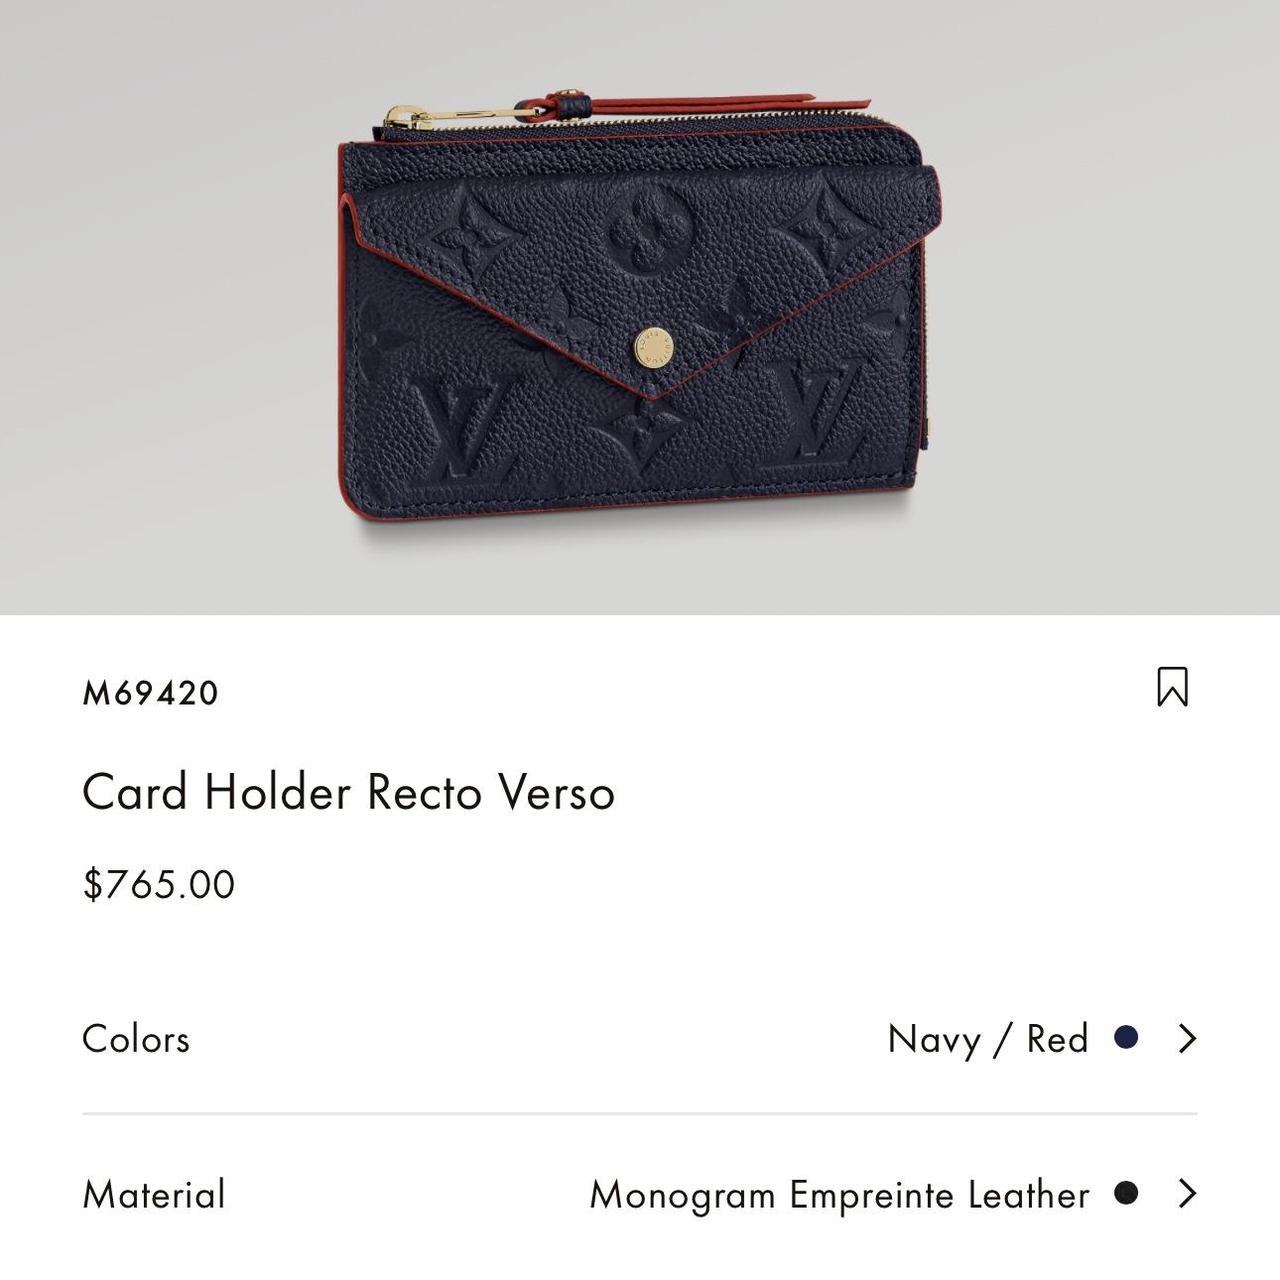 Louis Vuitton Monogram Empreinte Card Holder Recto Verso, Navy